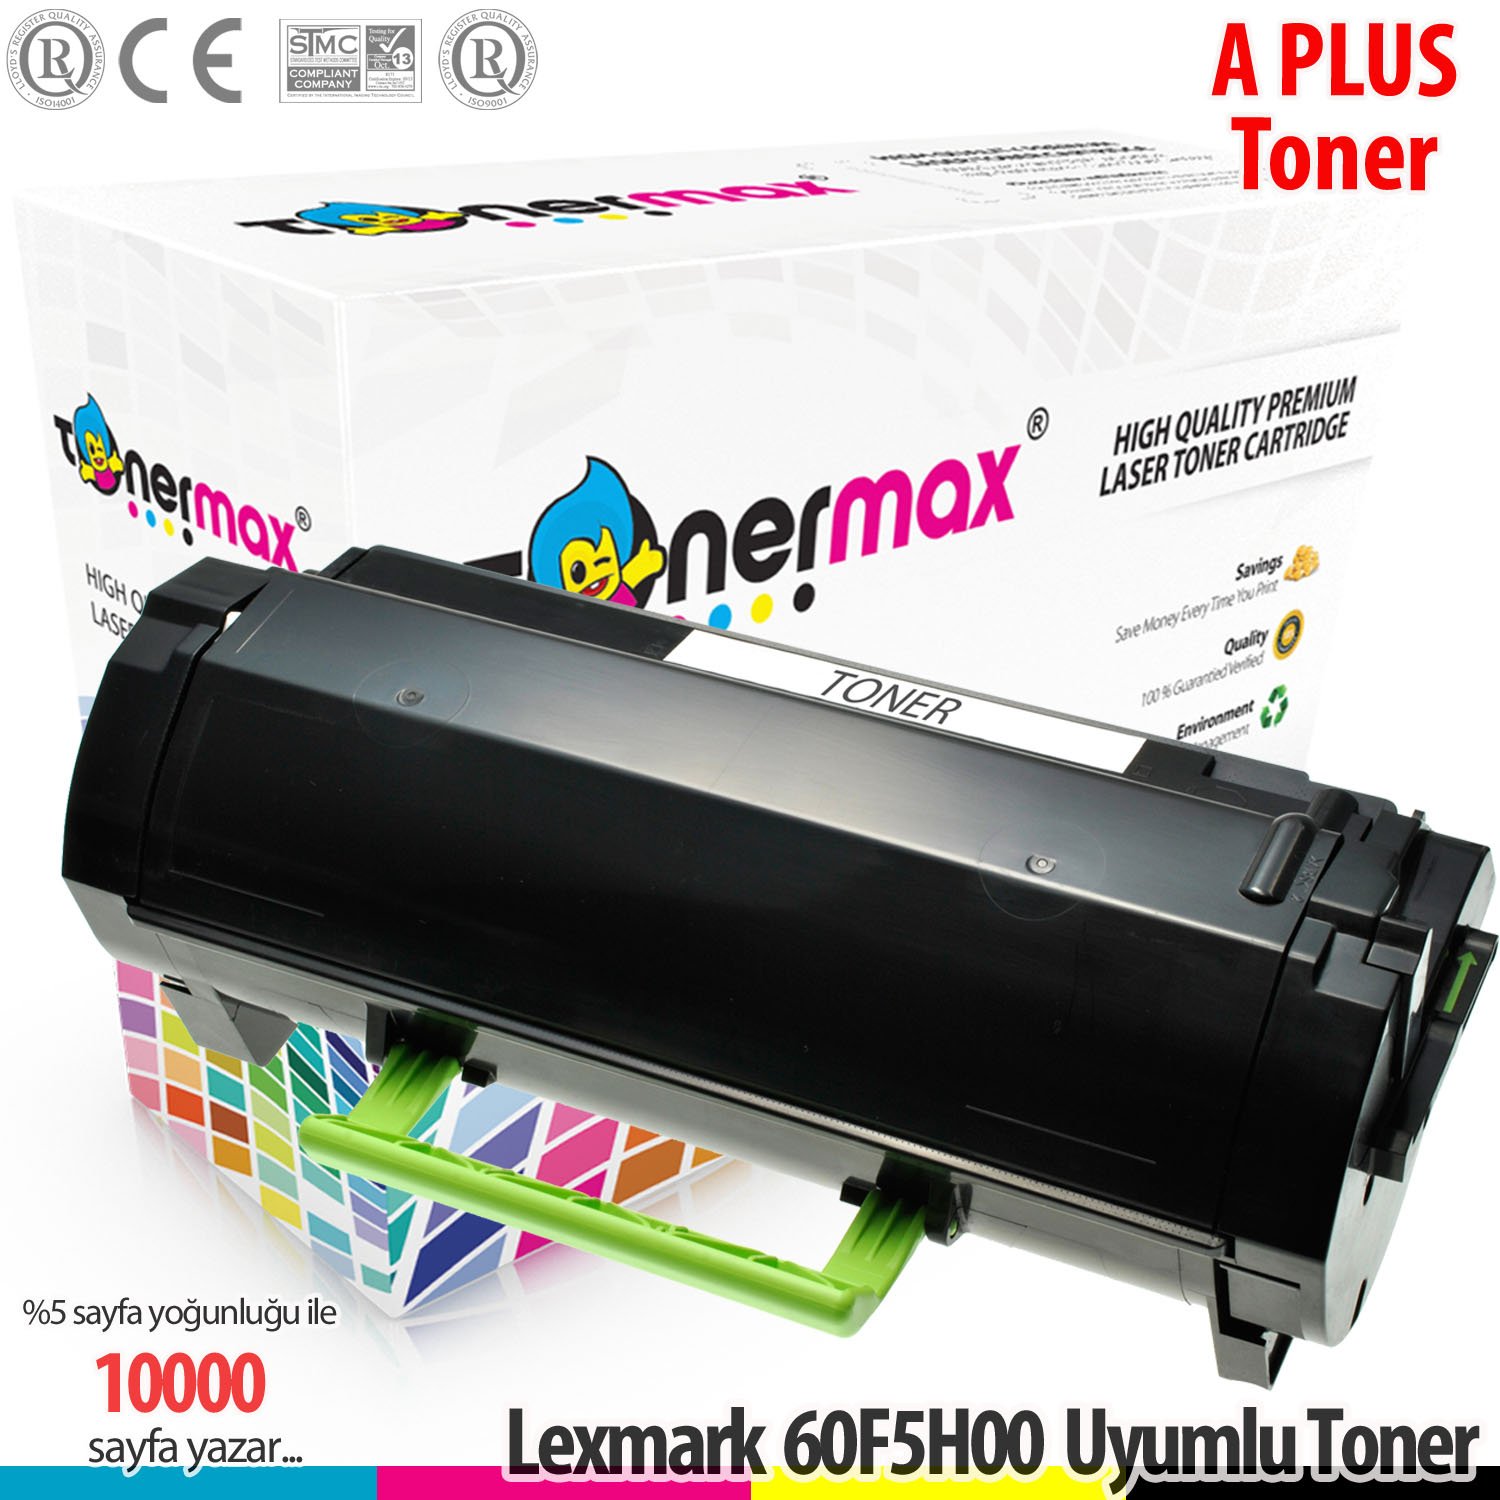 Lexmark 605H / 60F5H00 / MX310 / MX410 / MX510 / MX511 / MX611 A Plus Muadil Toner